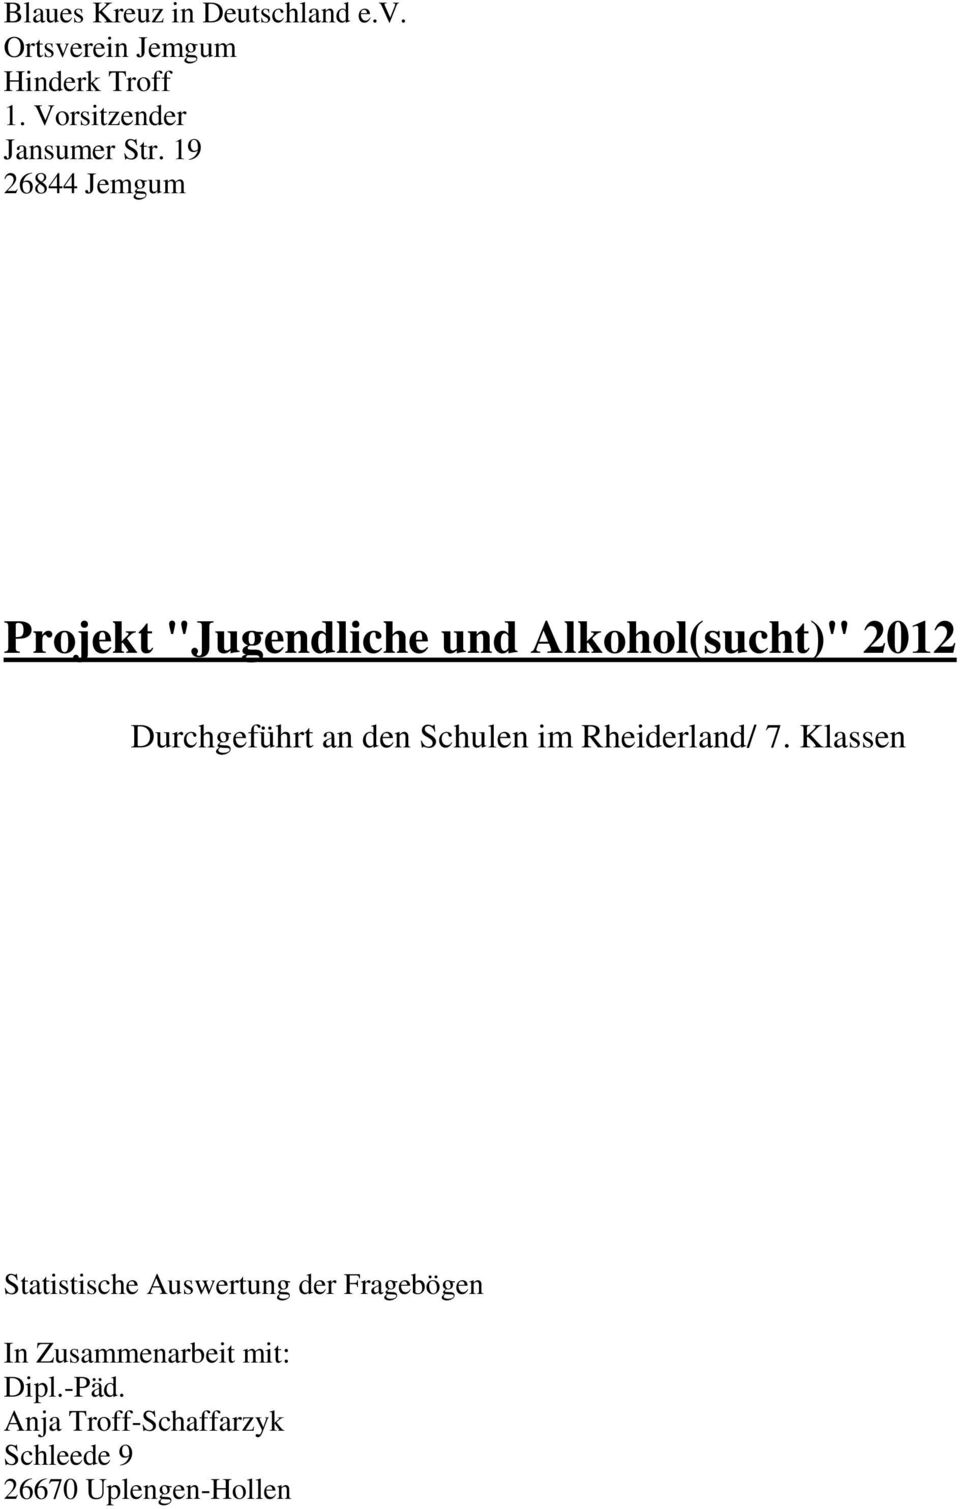 19 26844 Jemgum Projekt "Jugendliche und Alkohol(sucht)" 2012 Durchgeführt an den